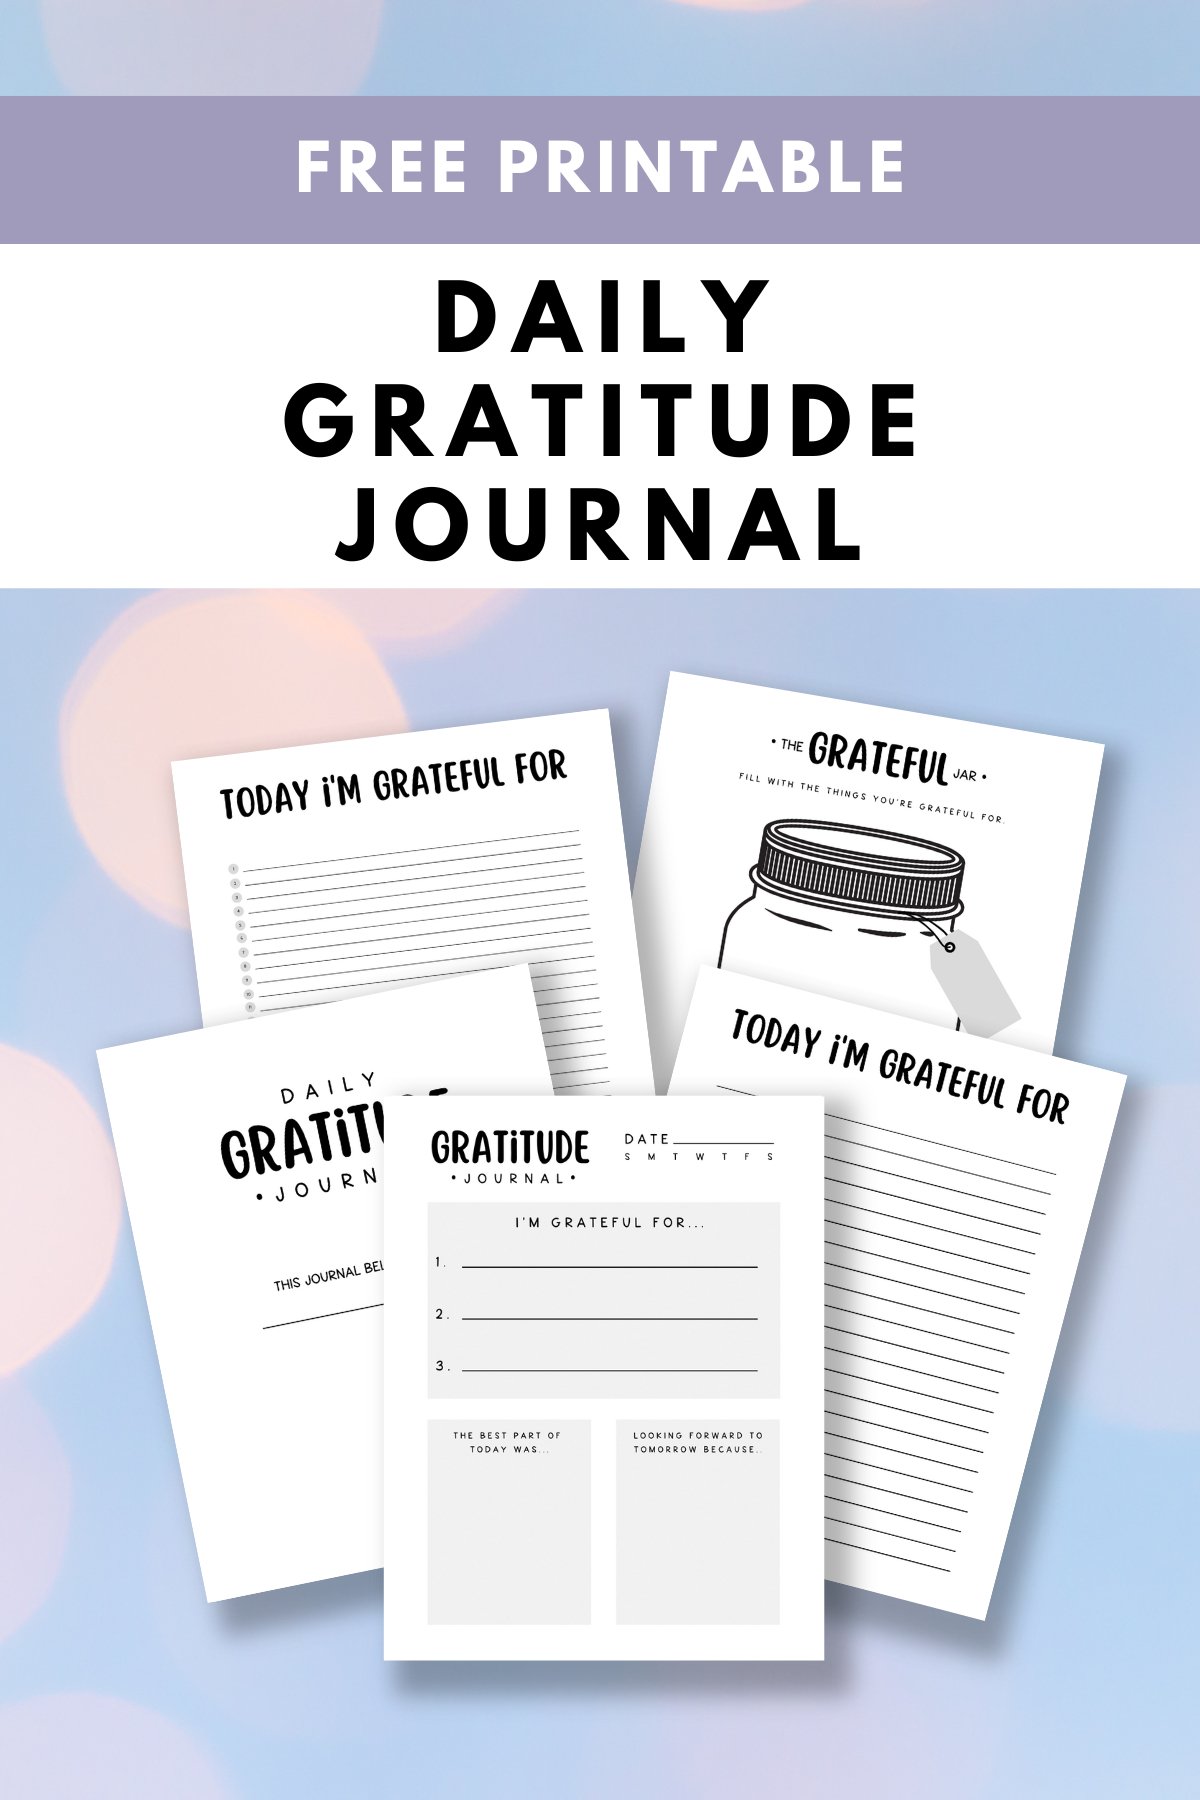 Journal de gratitude